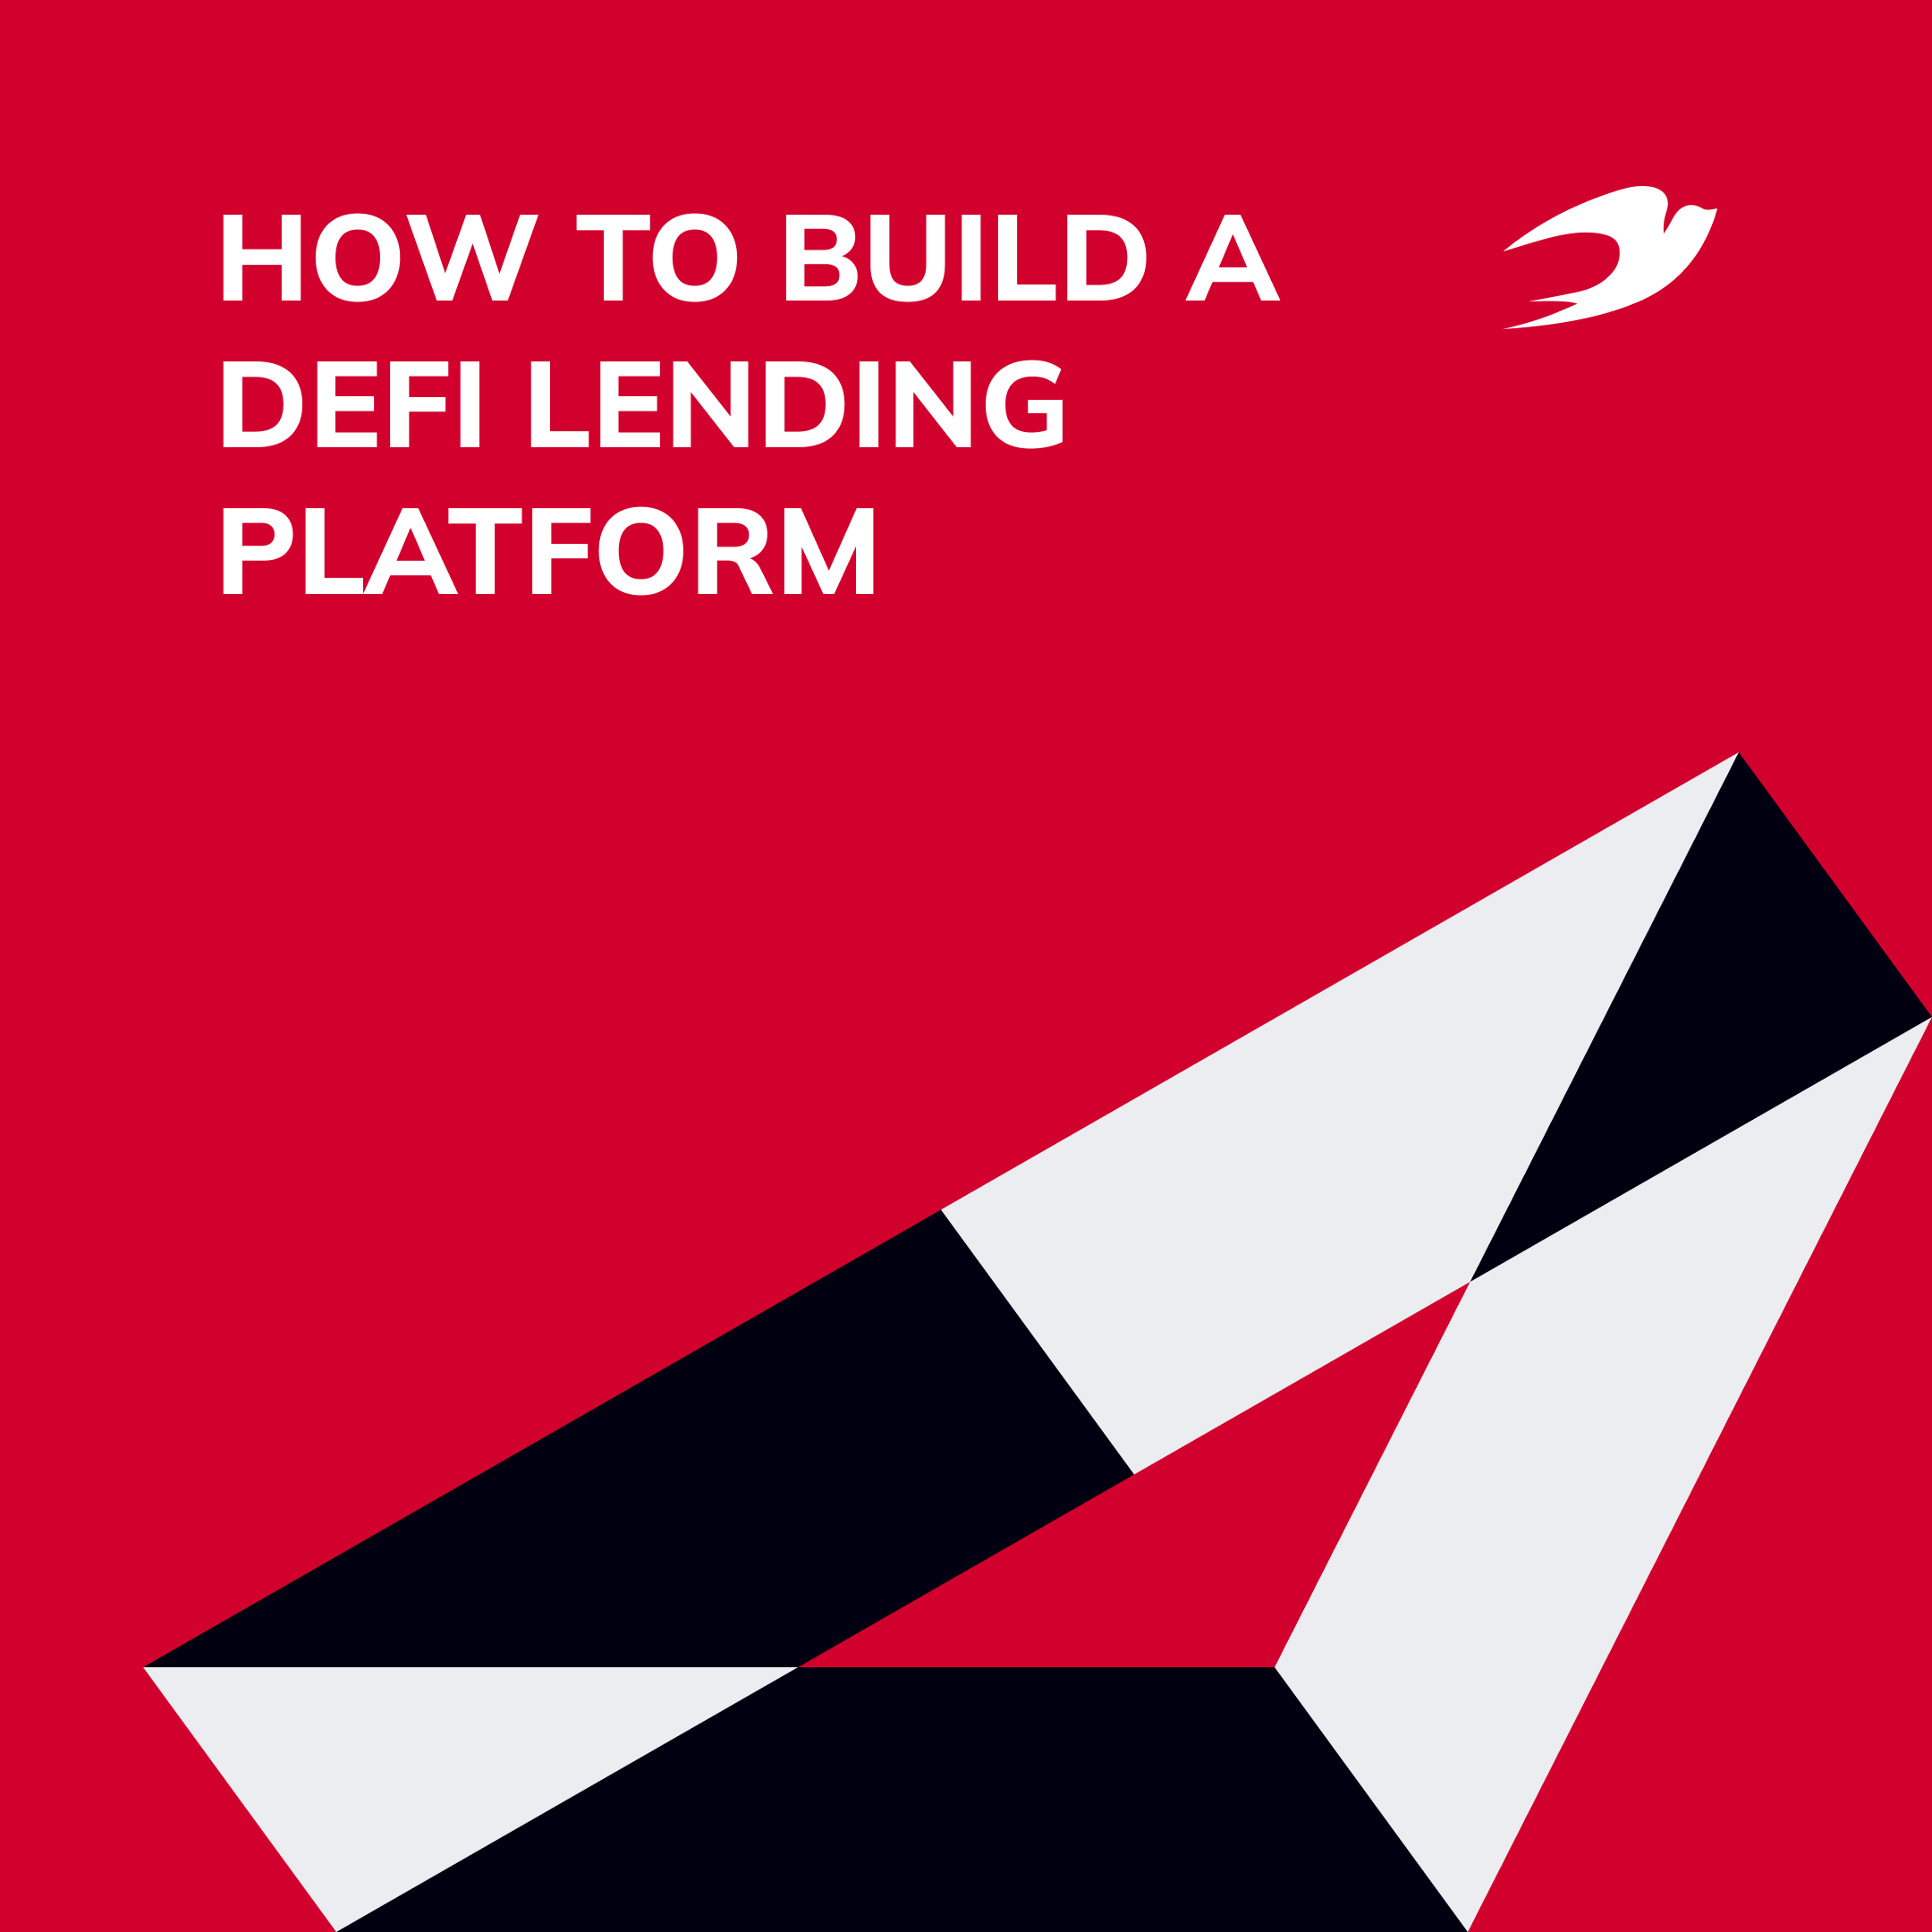 How to Build a DeFi Lending Platform